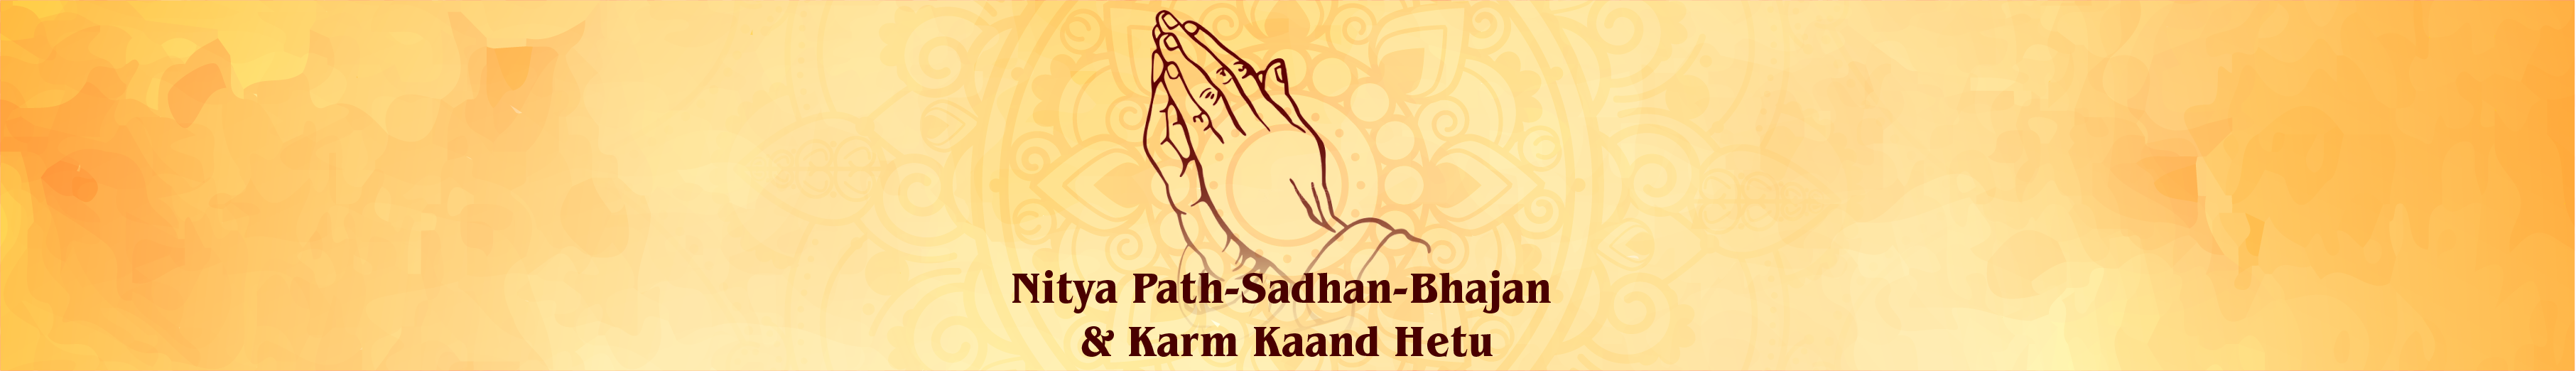 Nitya Path-Sadhan-Bhajan & Karm Kaand Hetu